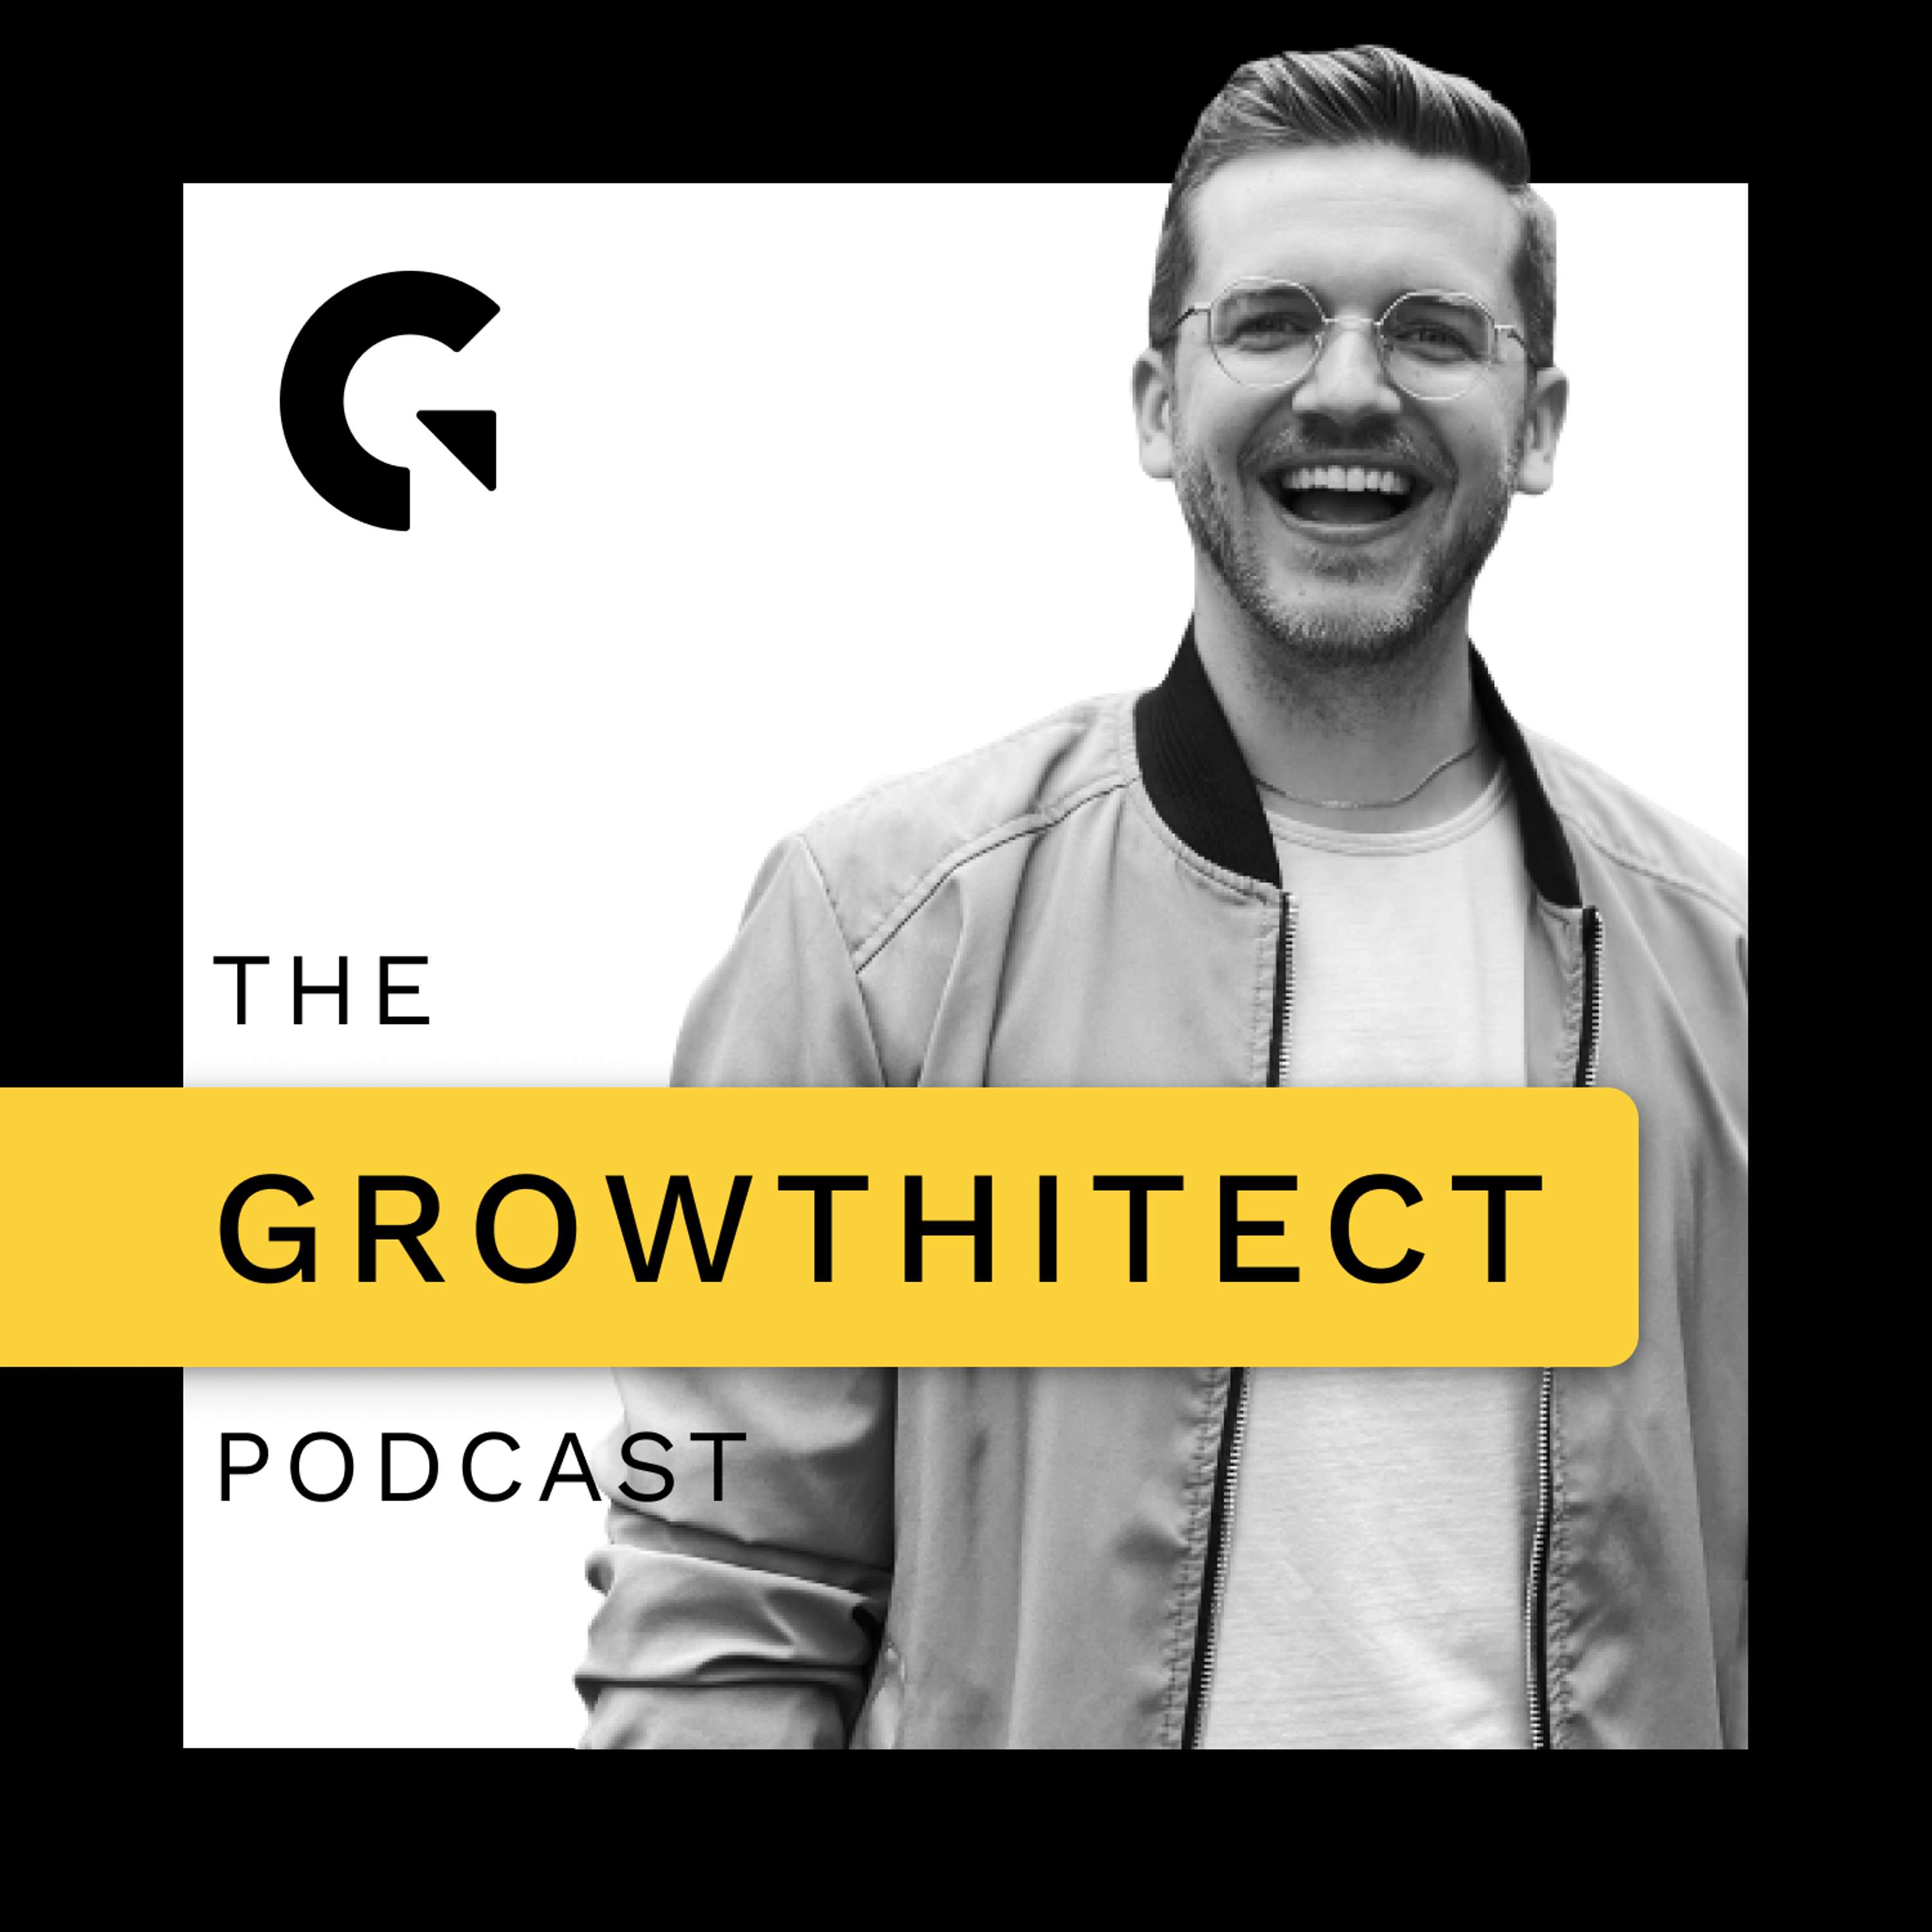 Growthitect Podcast